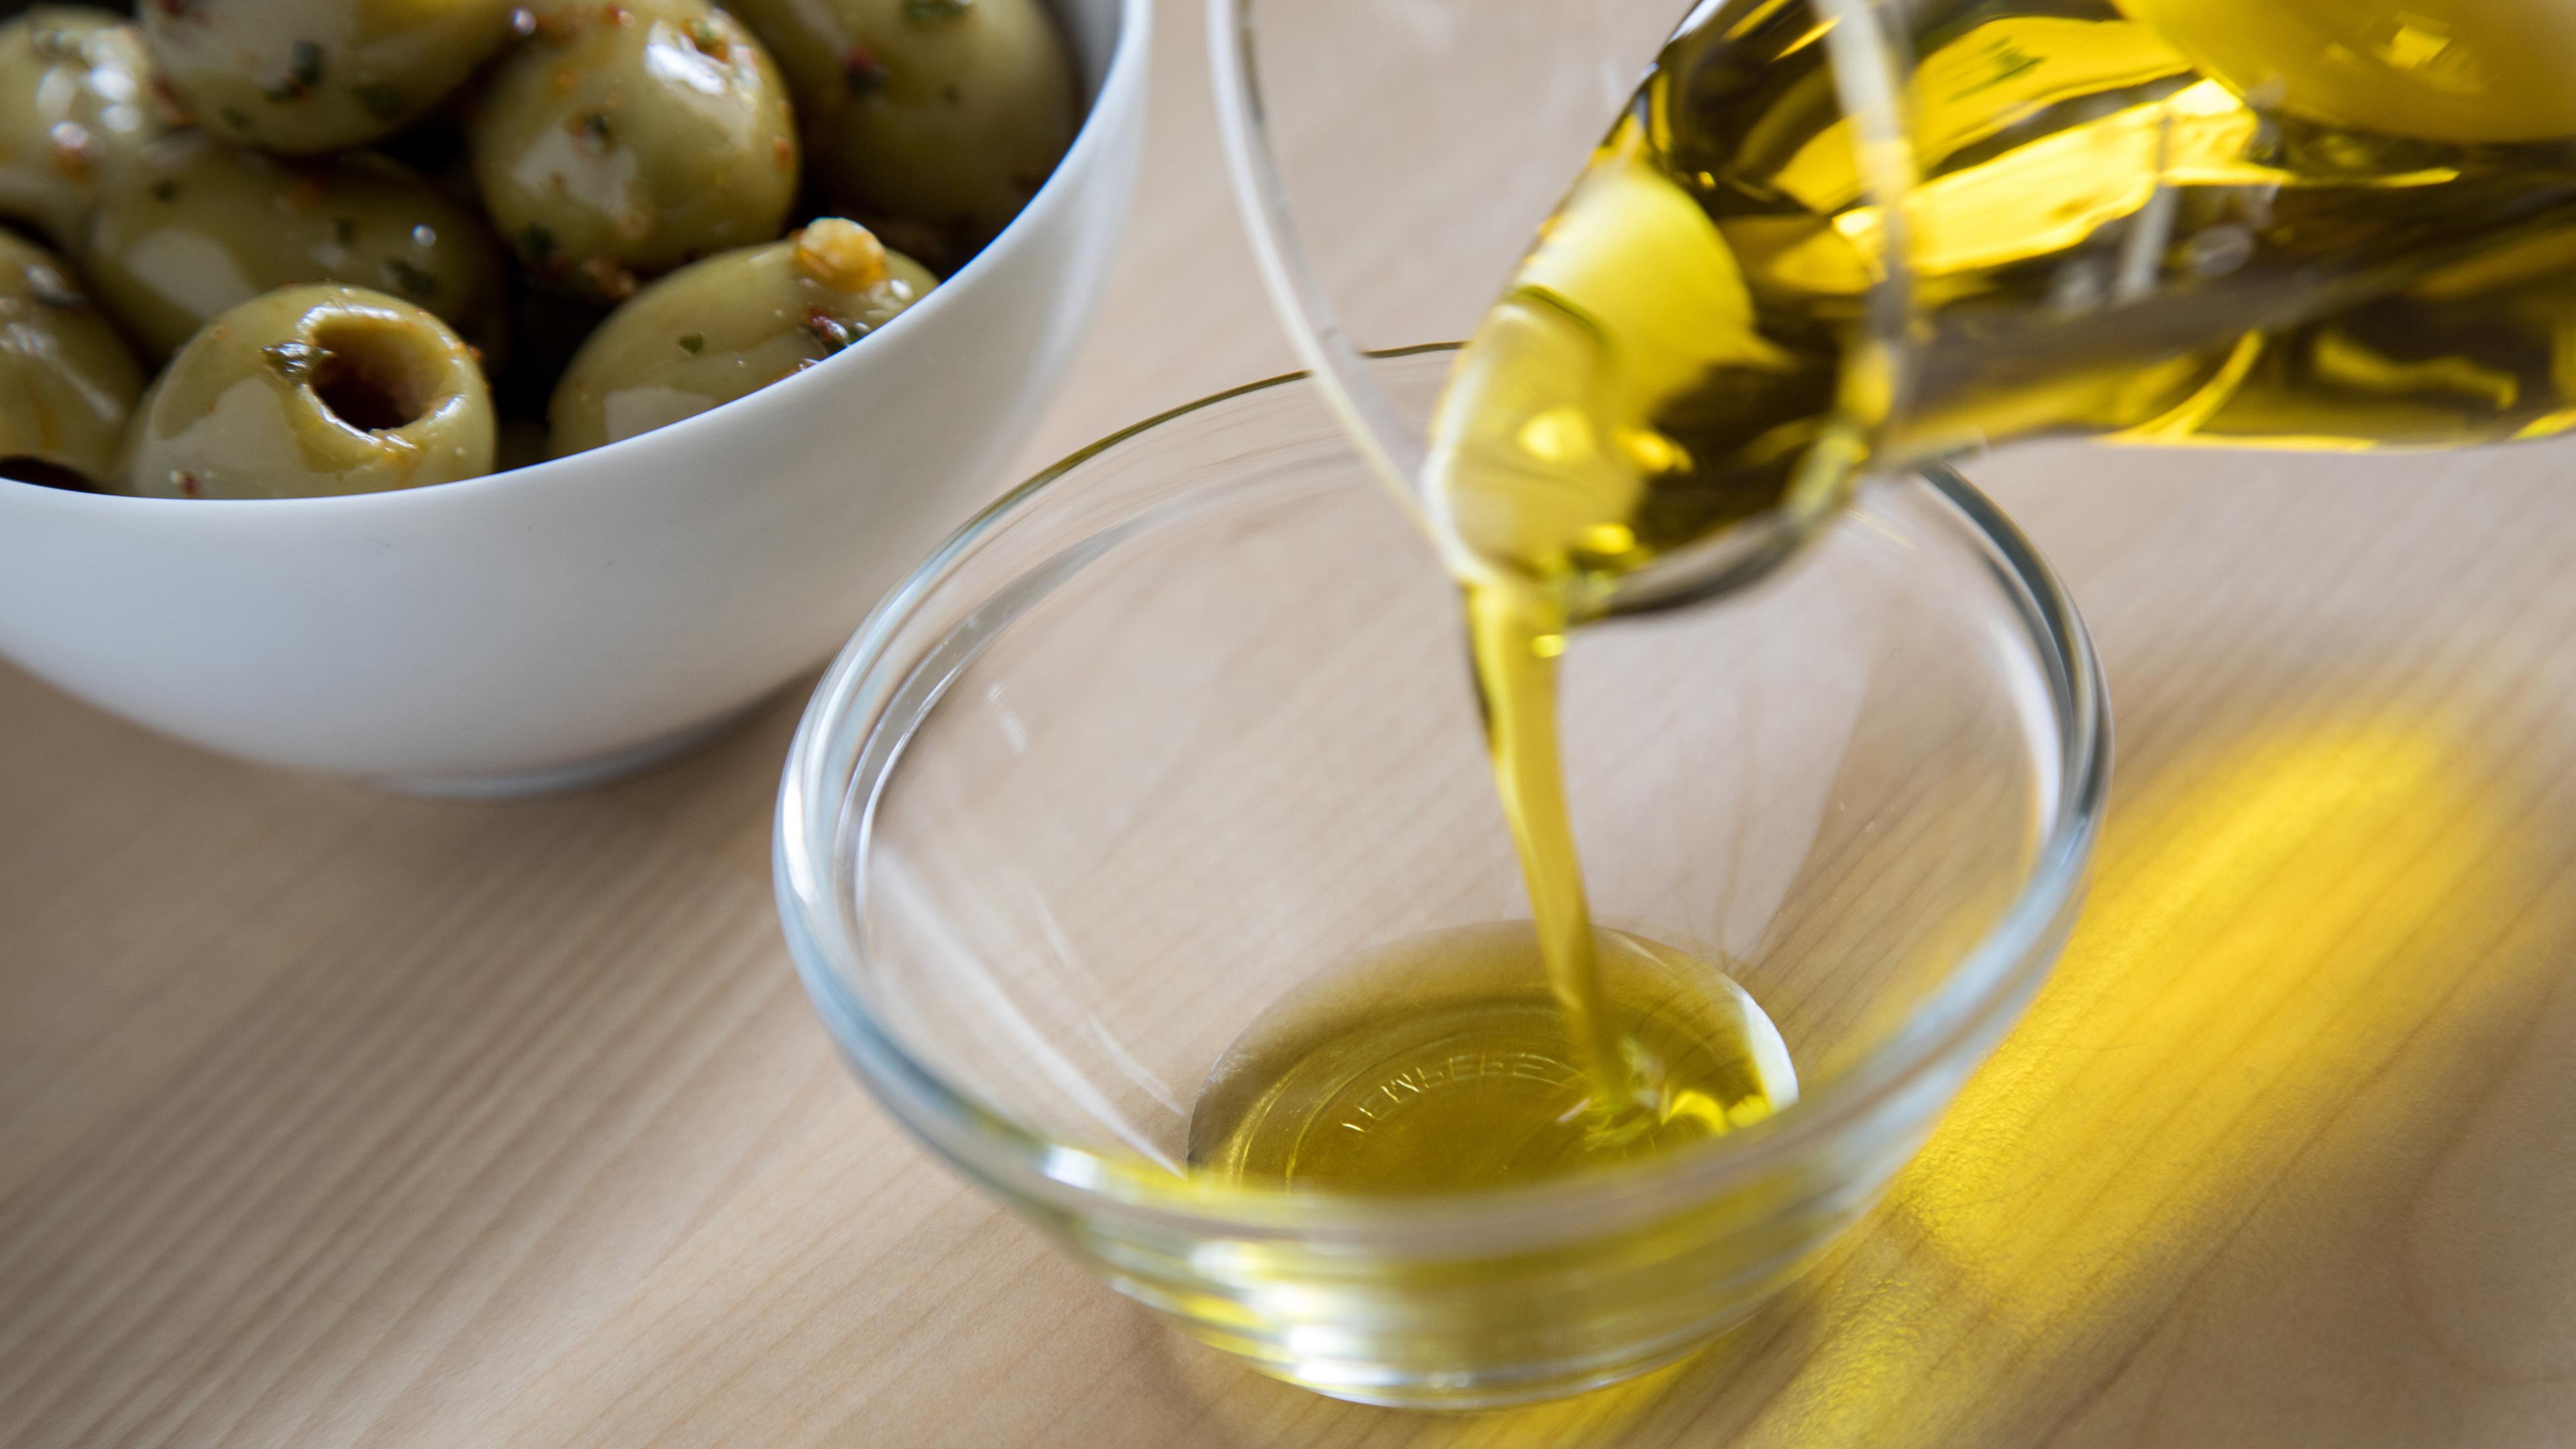 Schlechte Ernte treibt Preise für Olivenöl in die Höhe